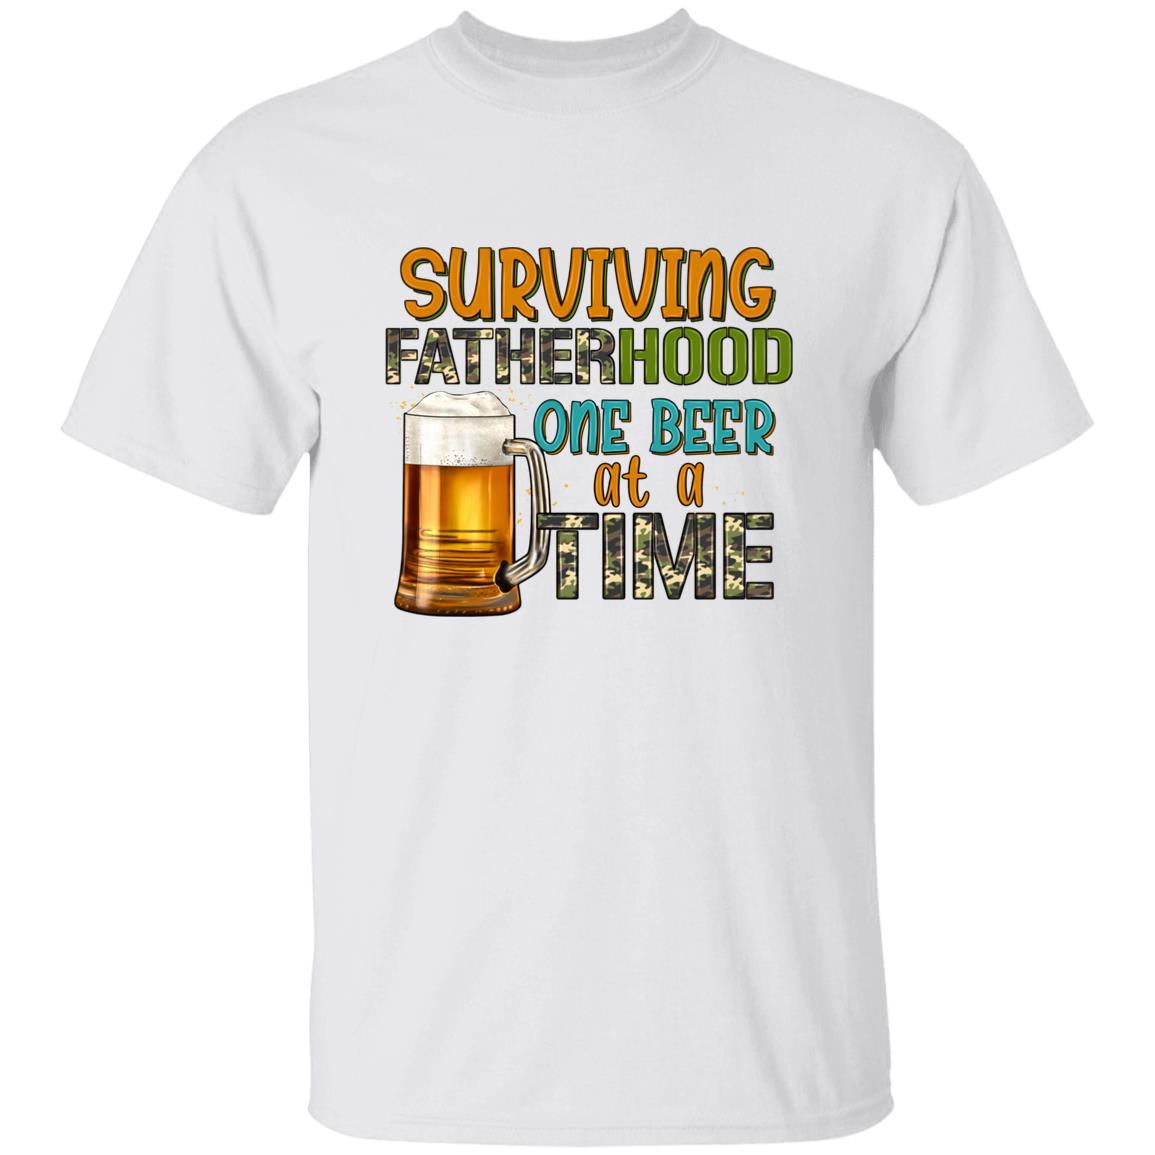 Survivng Fatherhood - T-Shirt